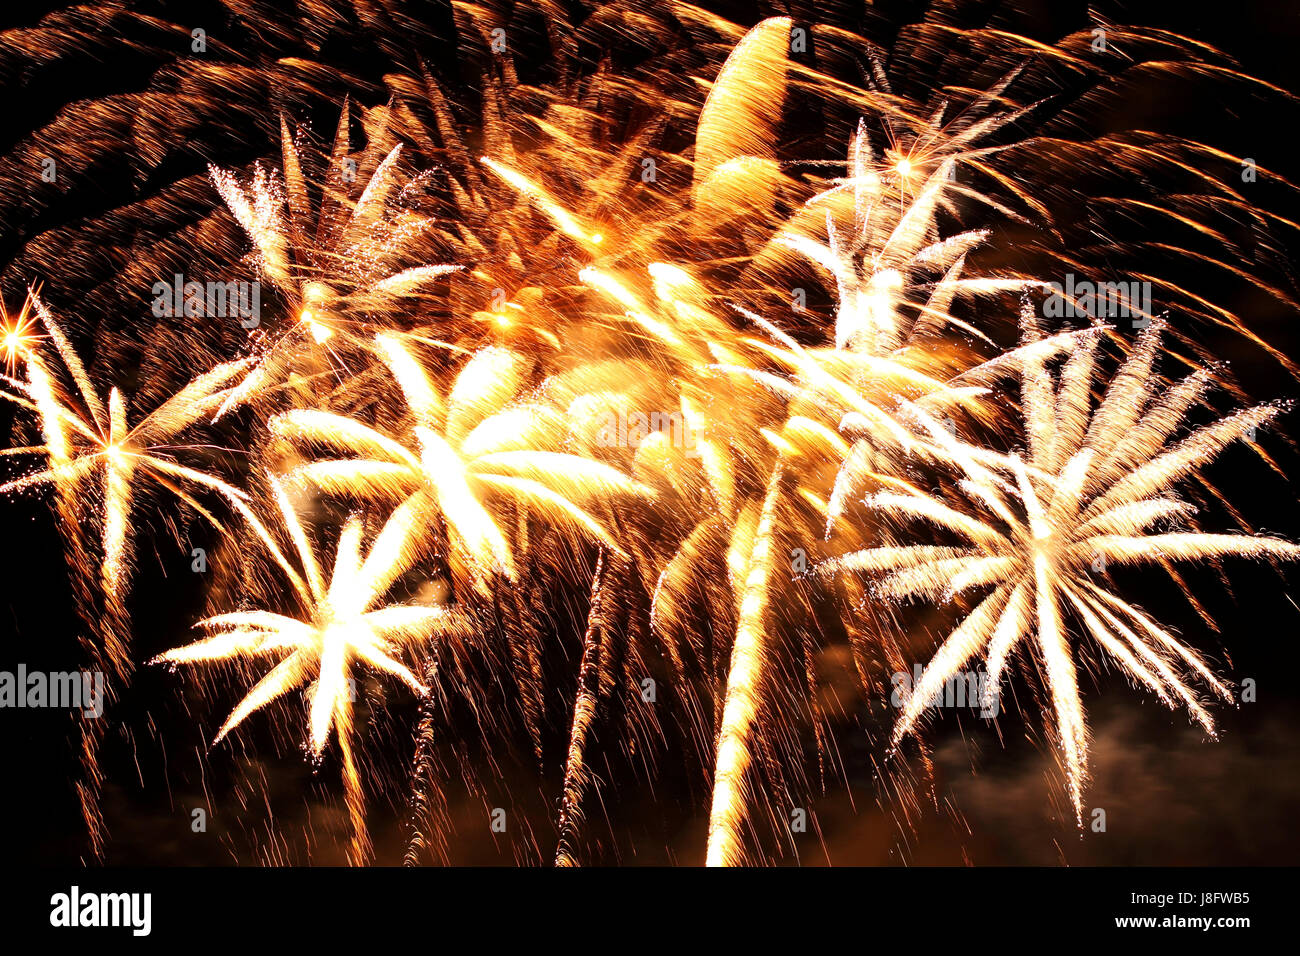 Feste, celebrazioni, giorno di nuovo anno s silvester, anno nuovo, rucola, petardo, Foto Stock